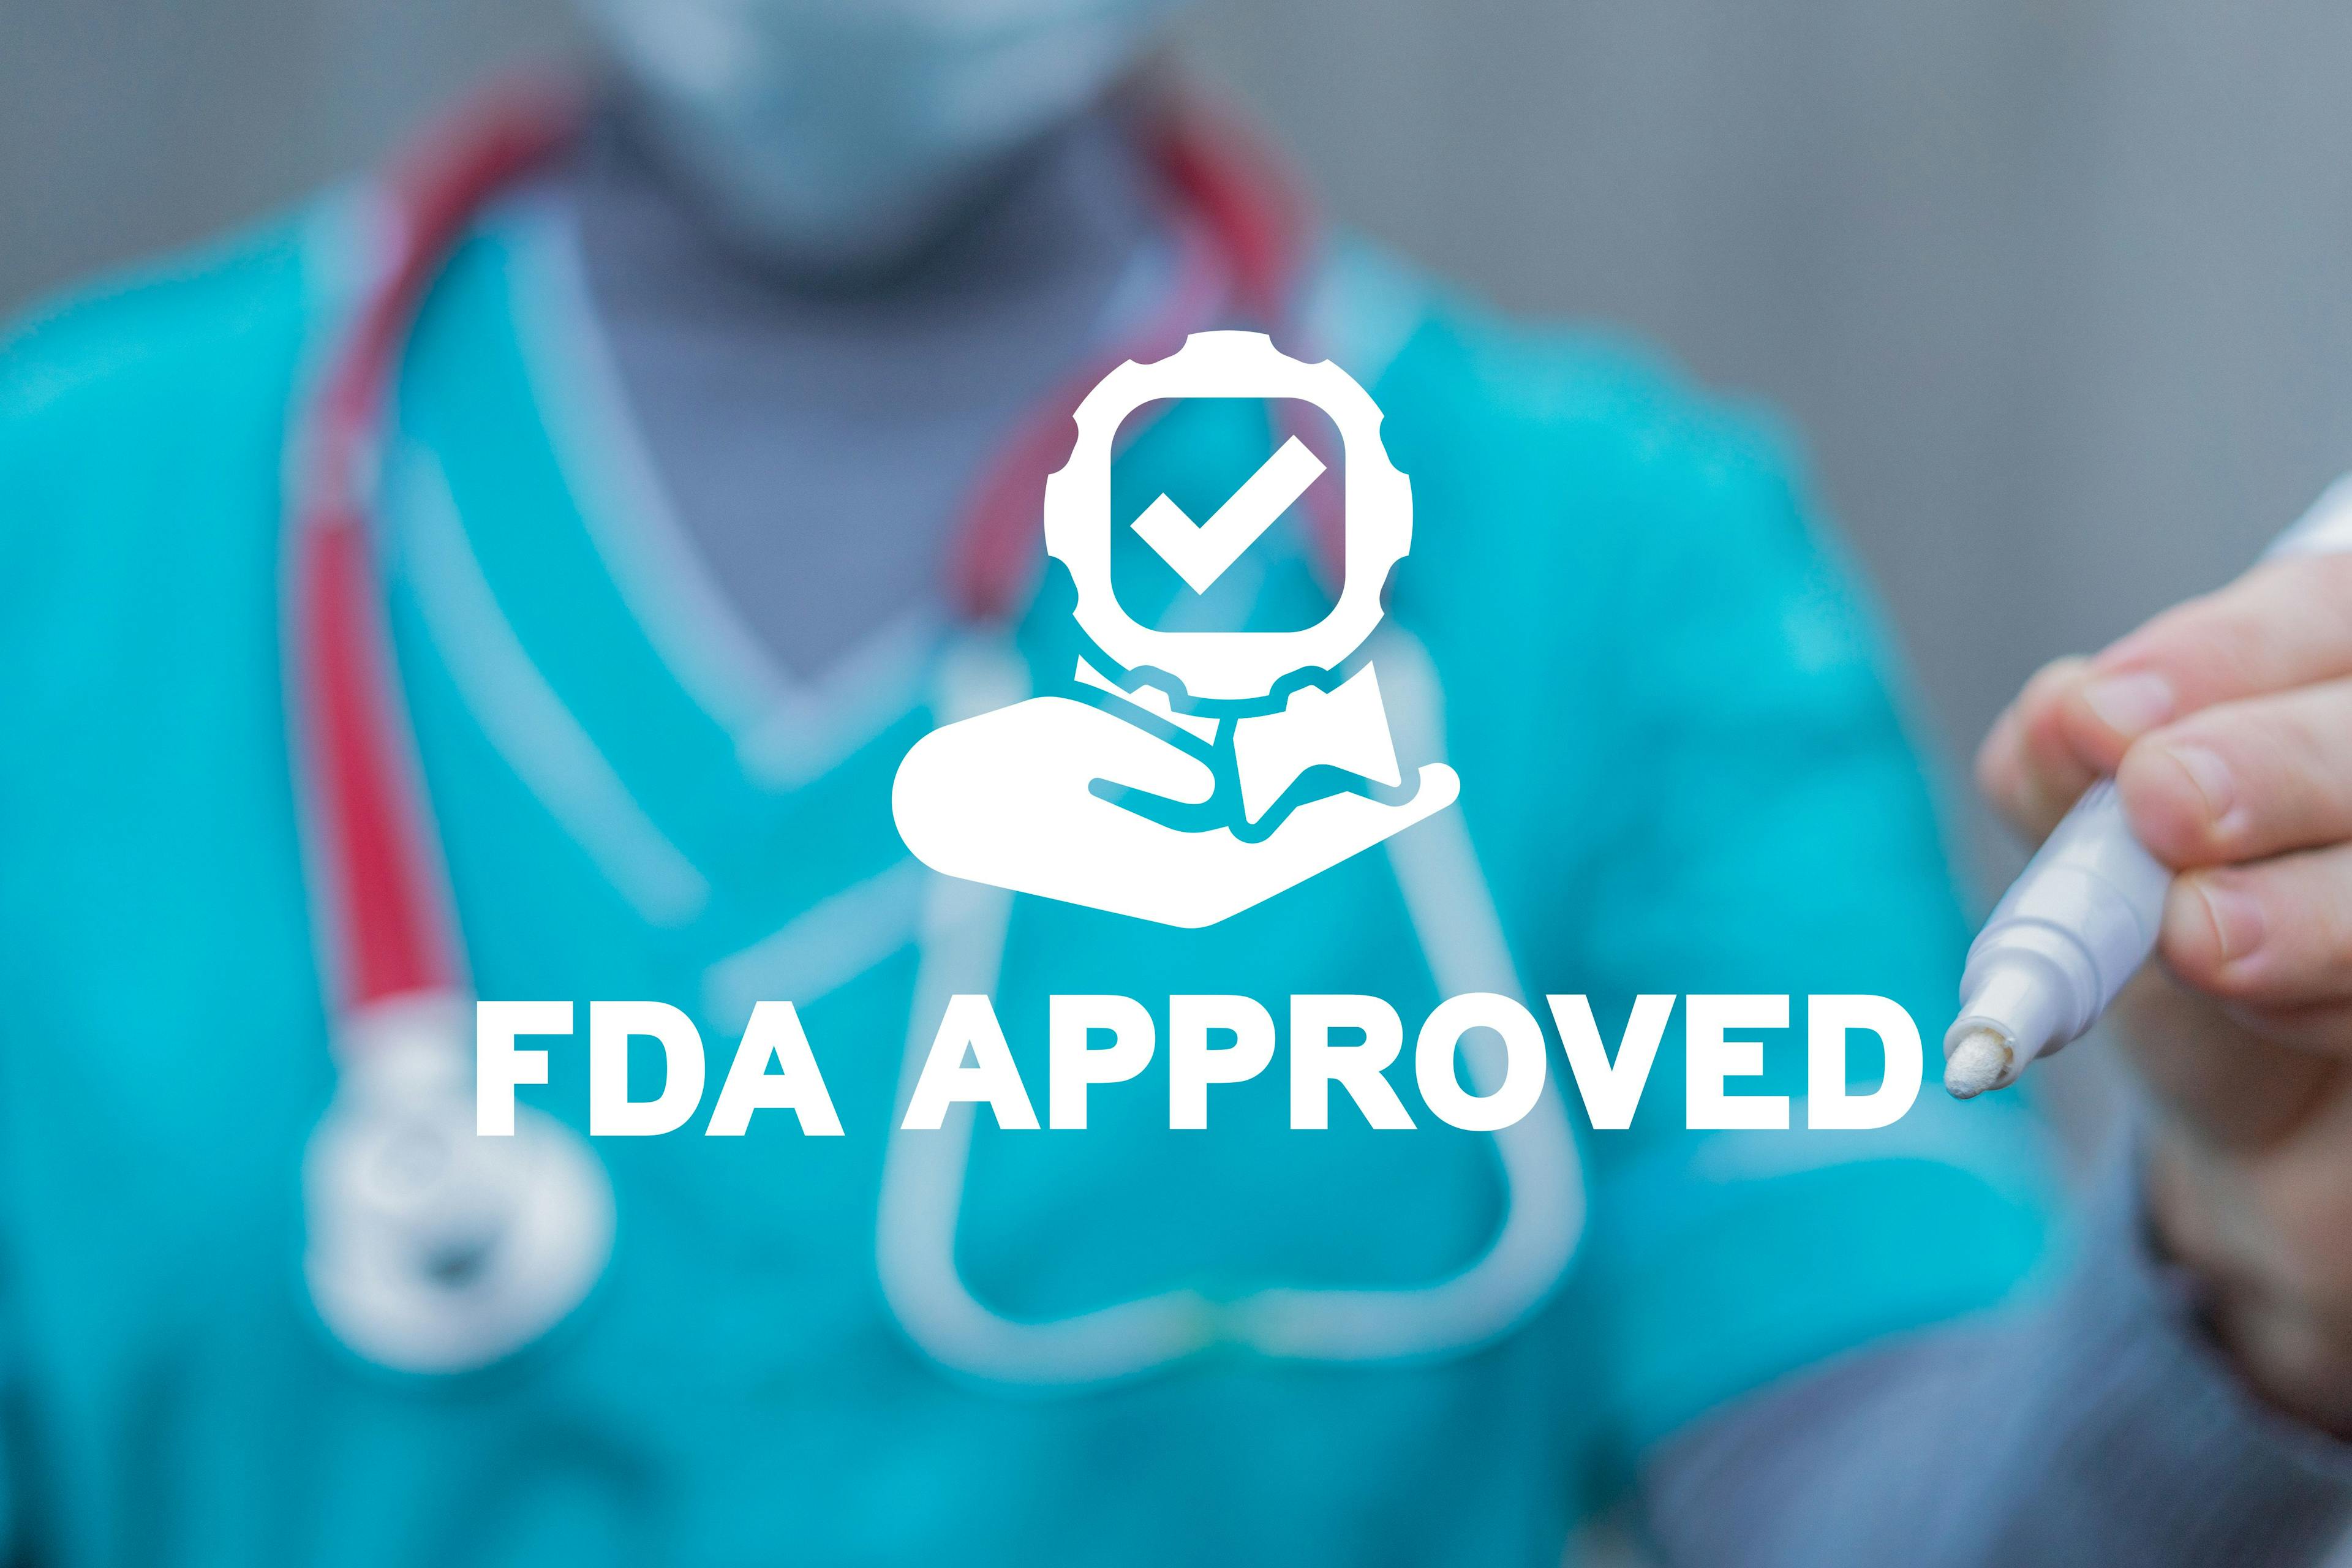 4 recent FDA updates